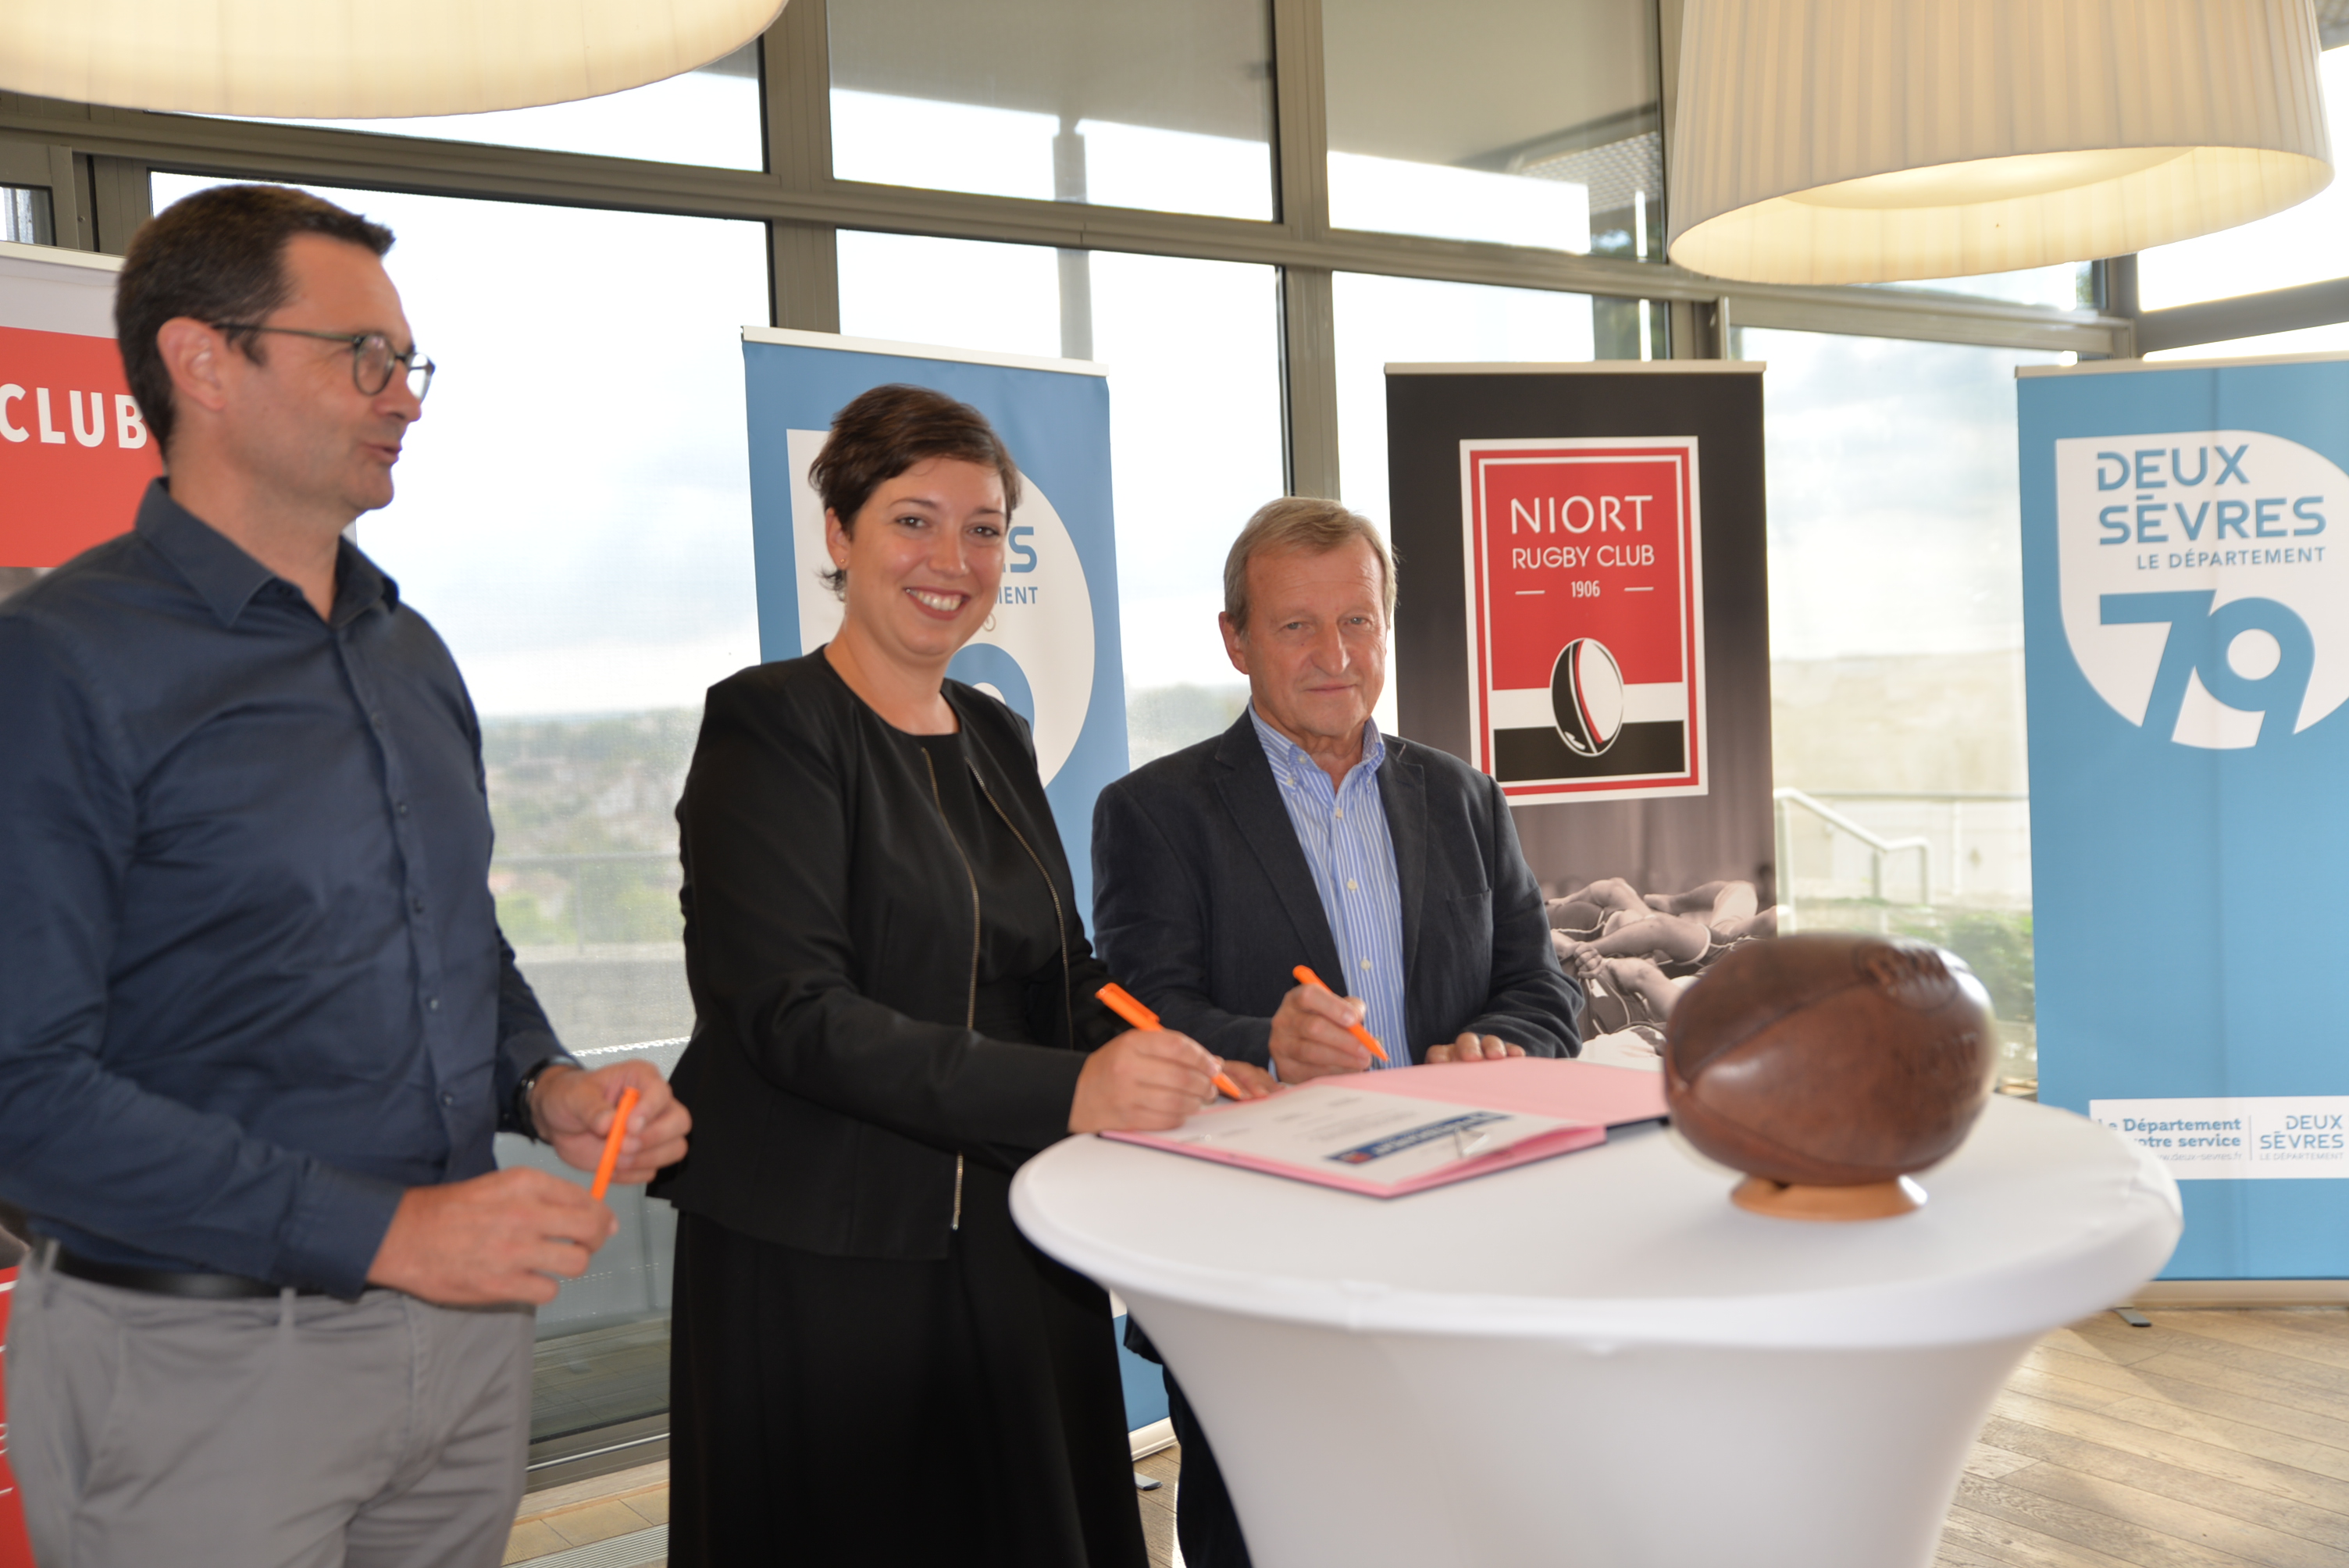 Le Département des Deux-Sèvres a renforcé son soutien par la signature d’un partenariat avec le club ce jeudi 25 août 2022 à la Maison du Département à Niort.